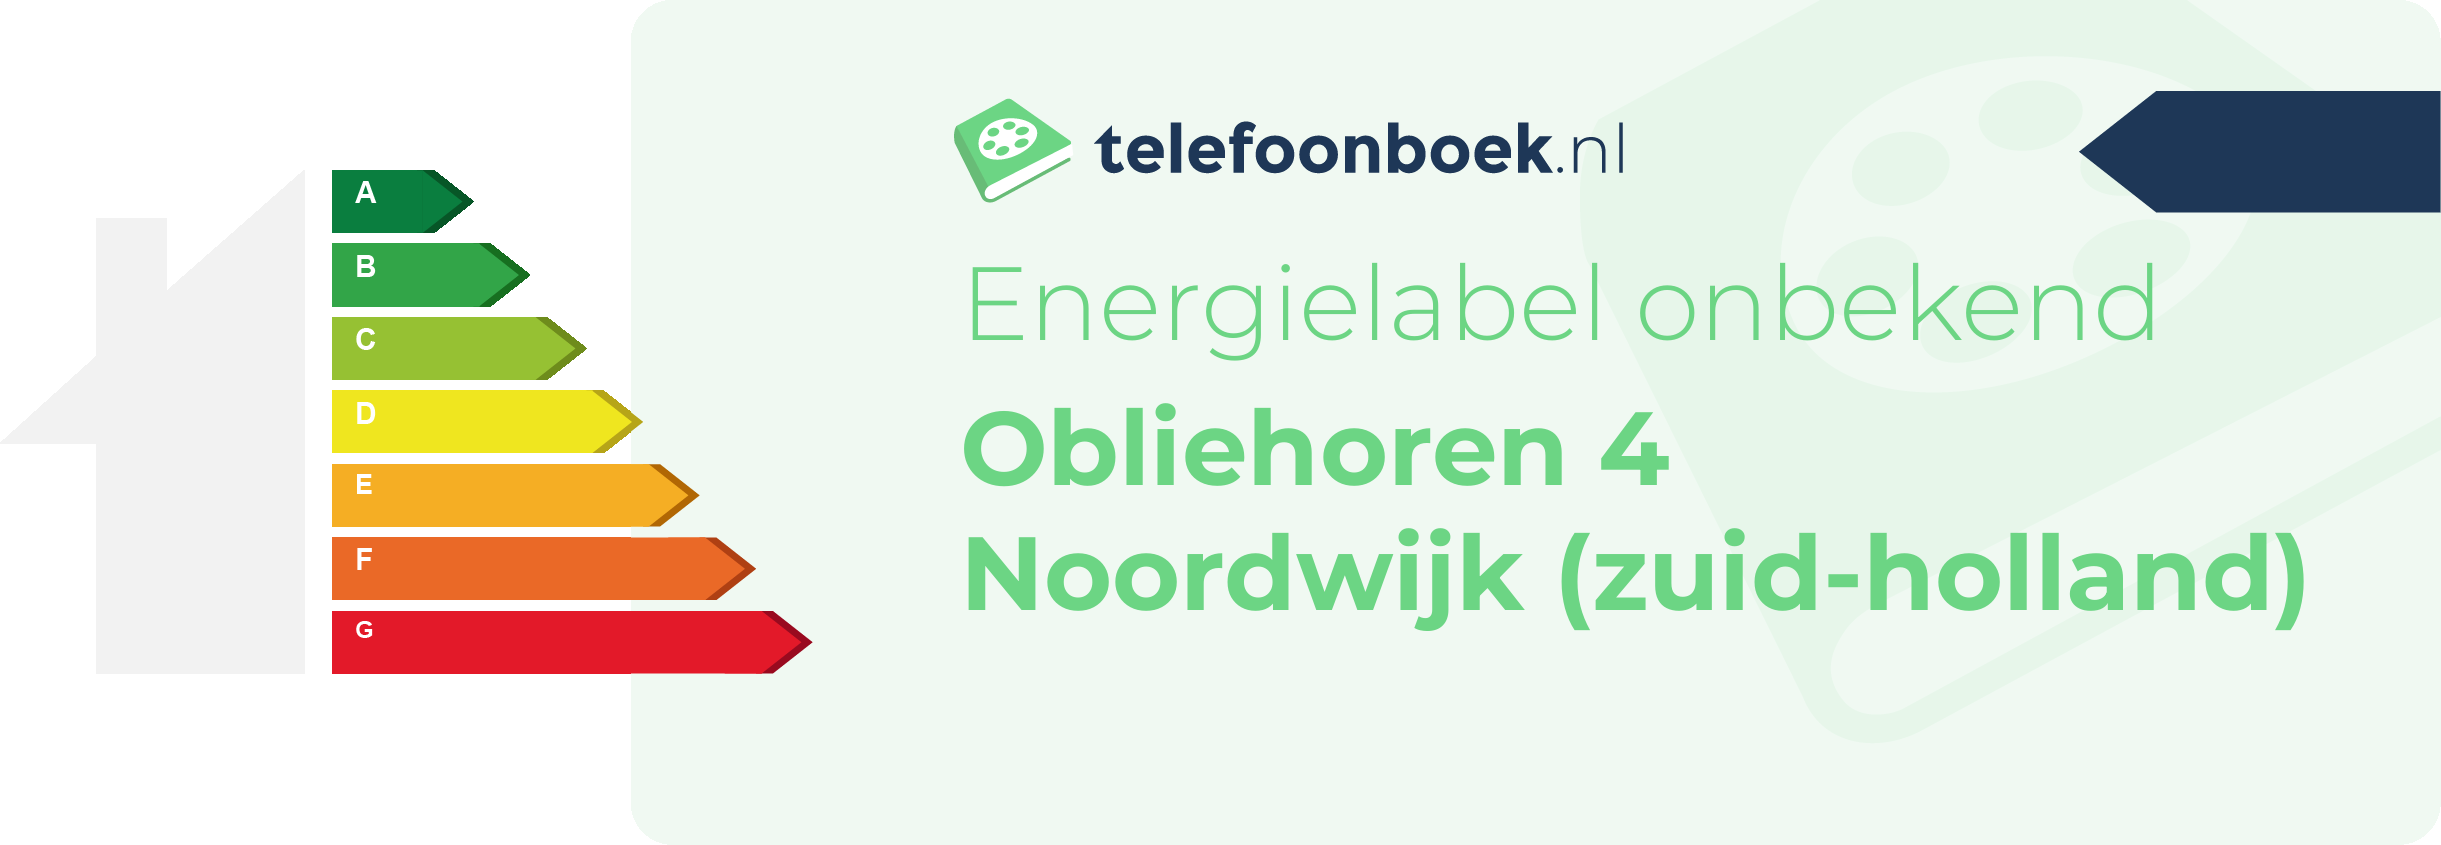 Energielabel Obliehoren 4 Noordwijk (Zuid-Holland)